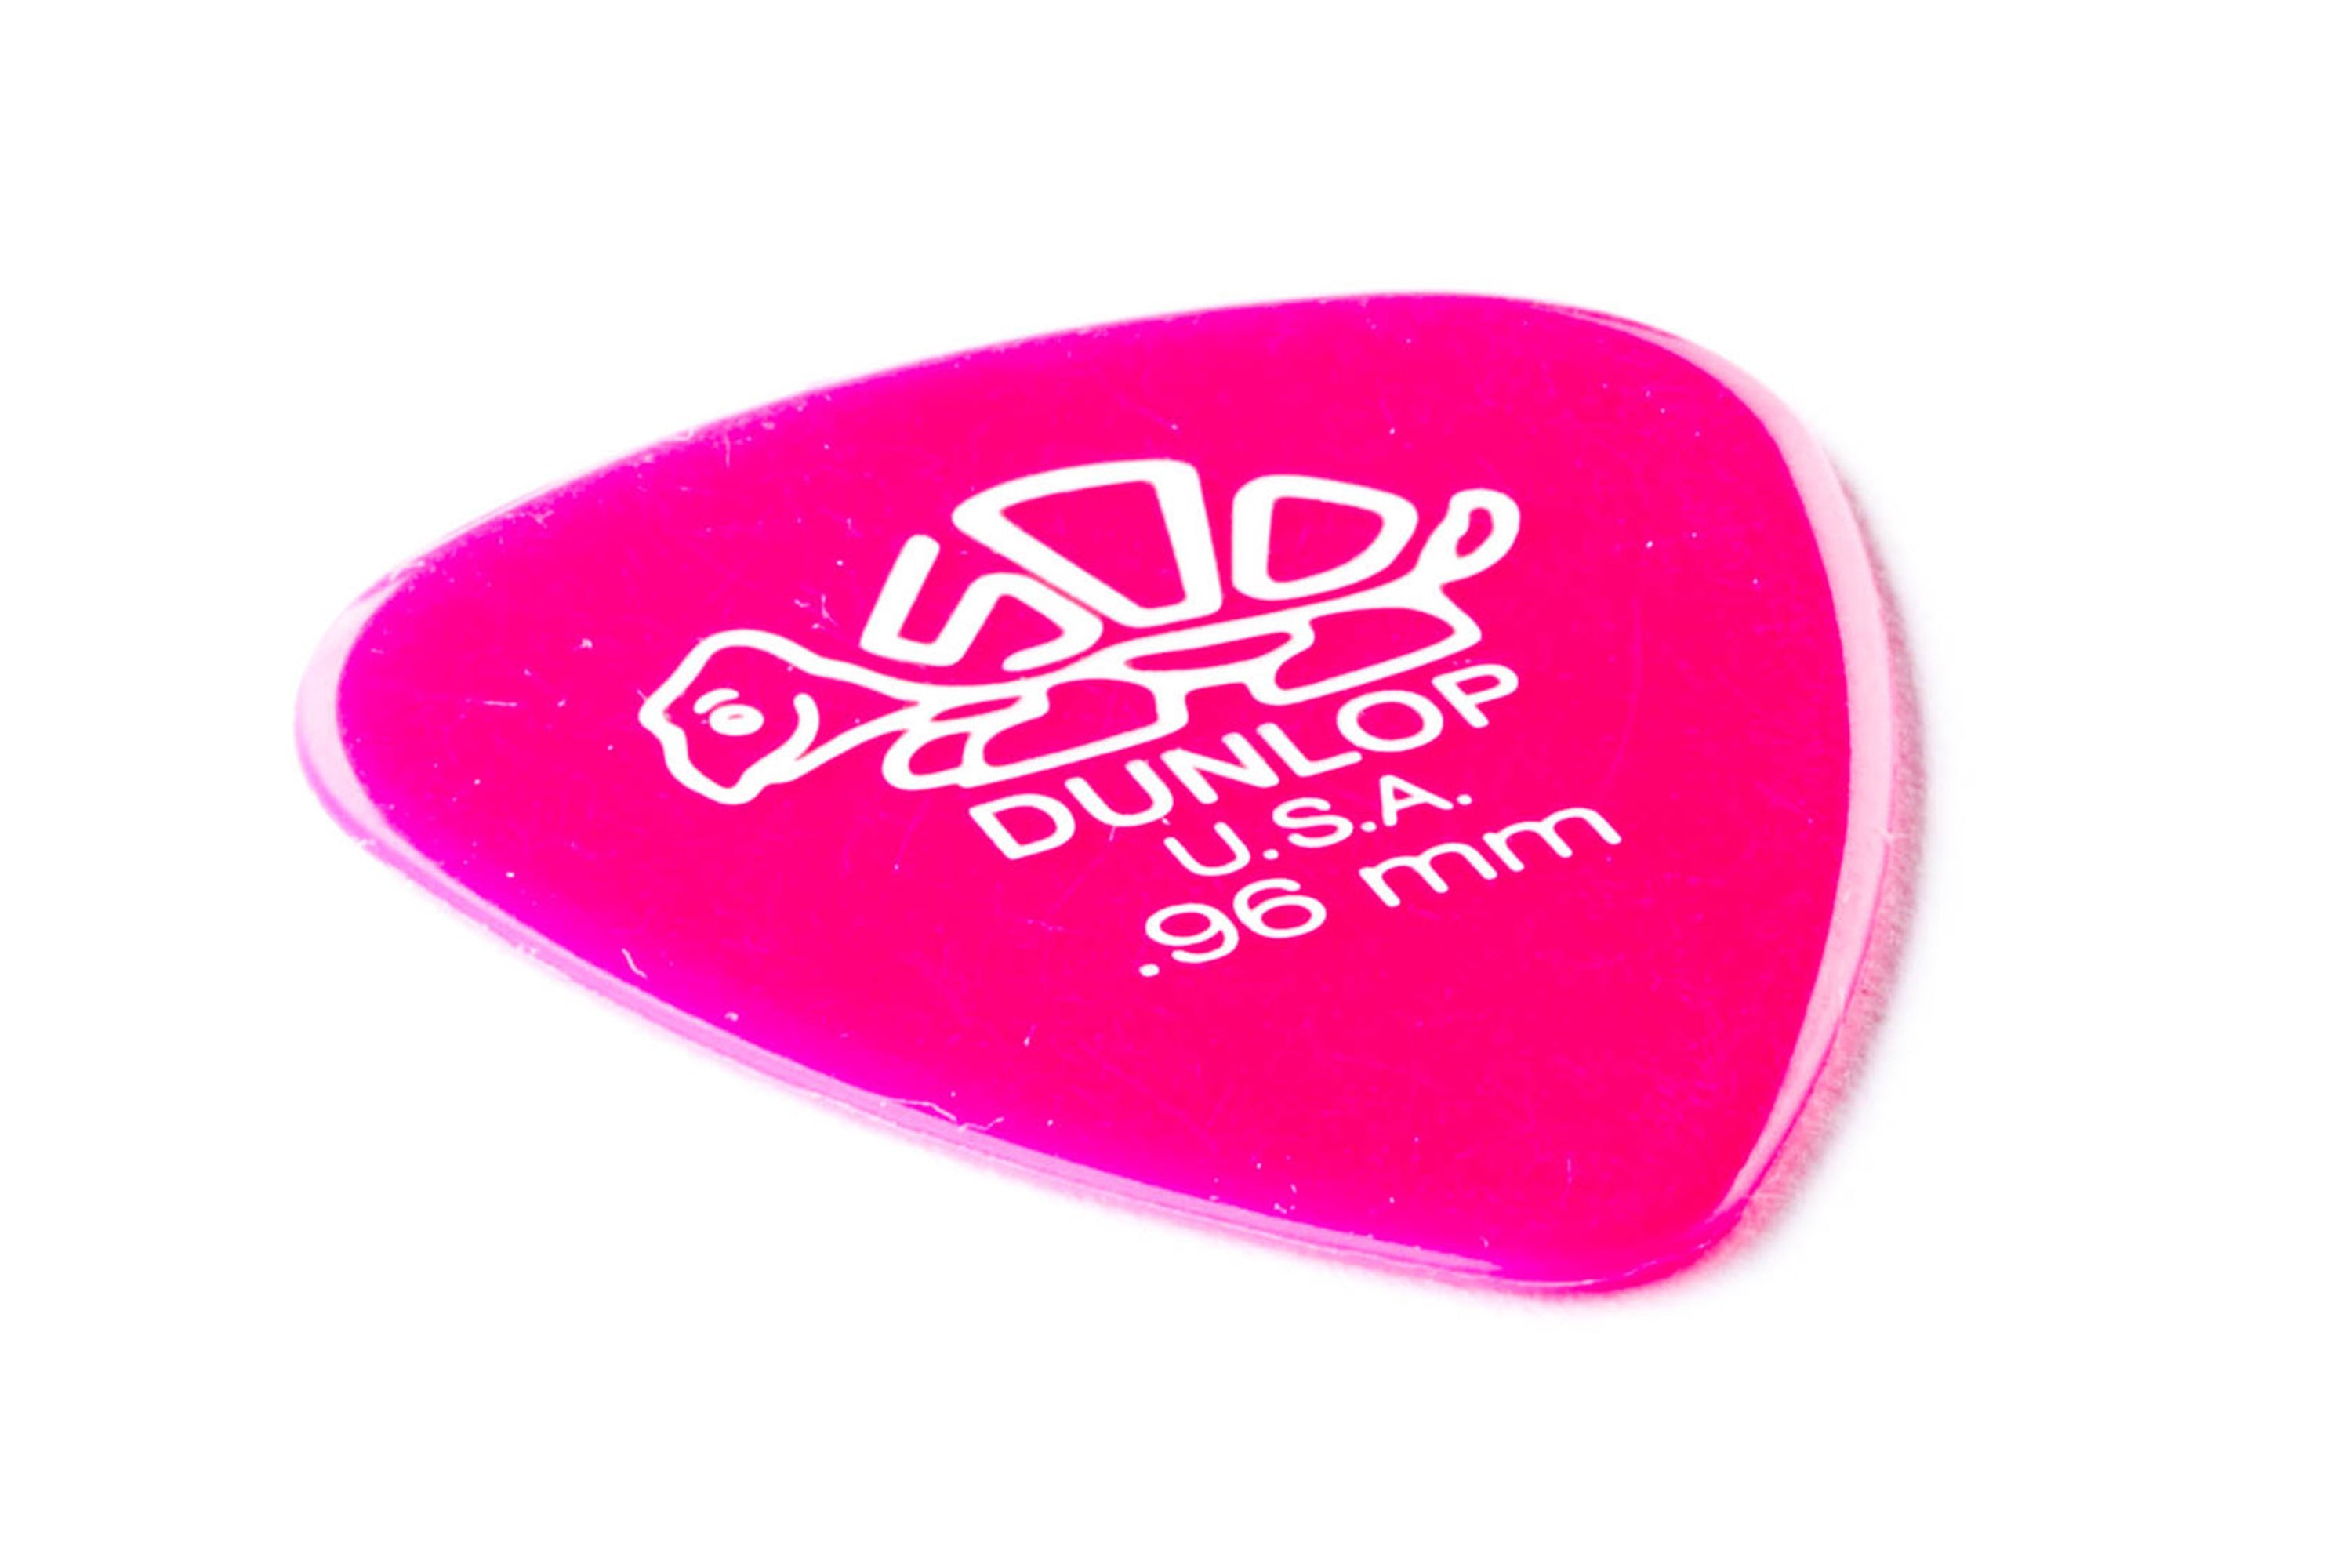 Dunlop Delrin 500 Standard .96mm Dark Pink Guitar & Ukulele Pick - SINGLE PICK